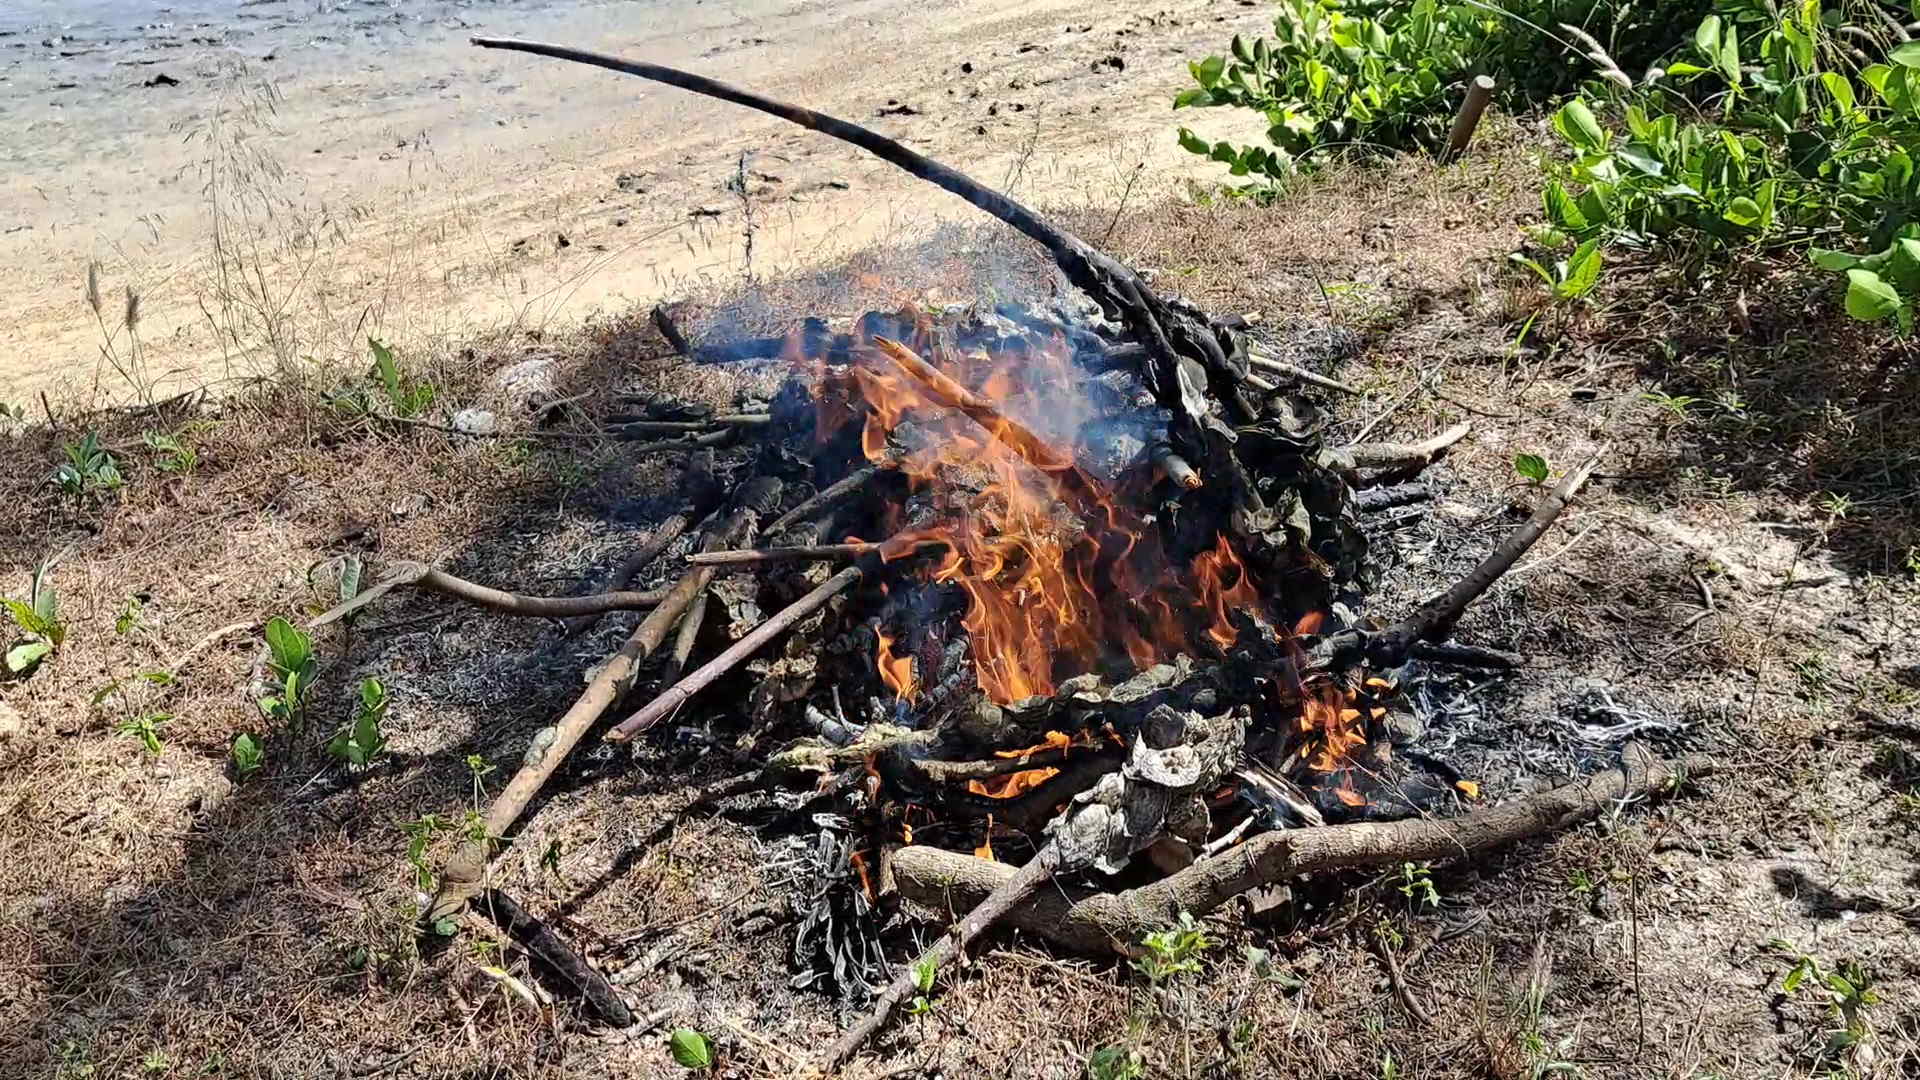 39a – Camp fires